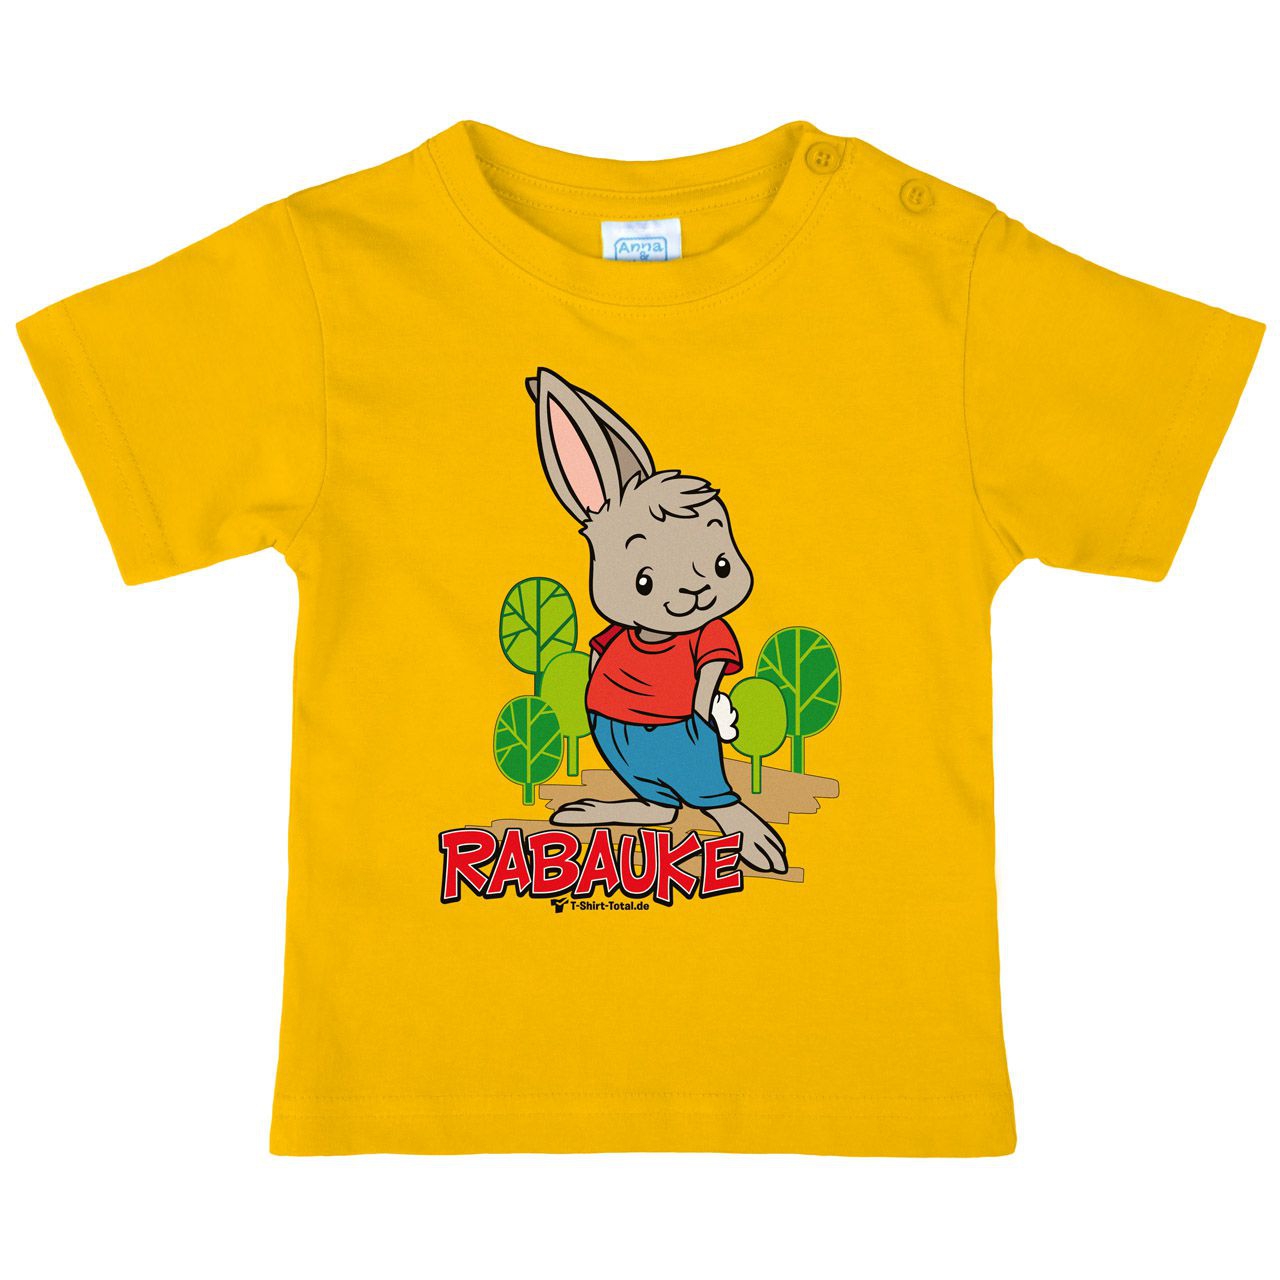 Rabauke Kinder T-Shirt gelb 110 / 116